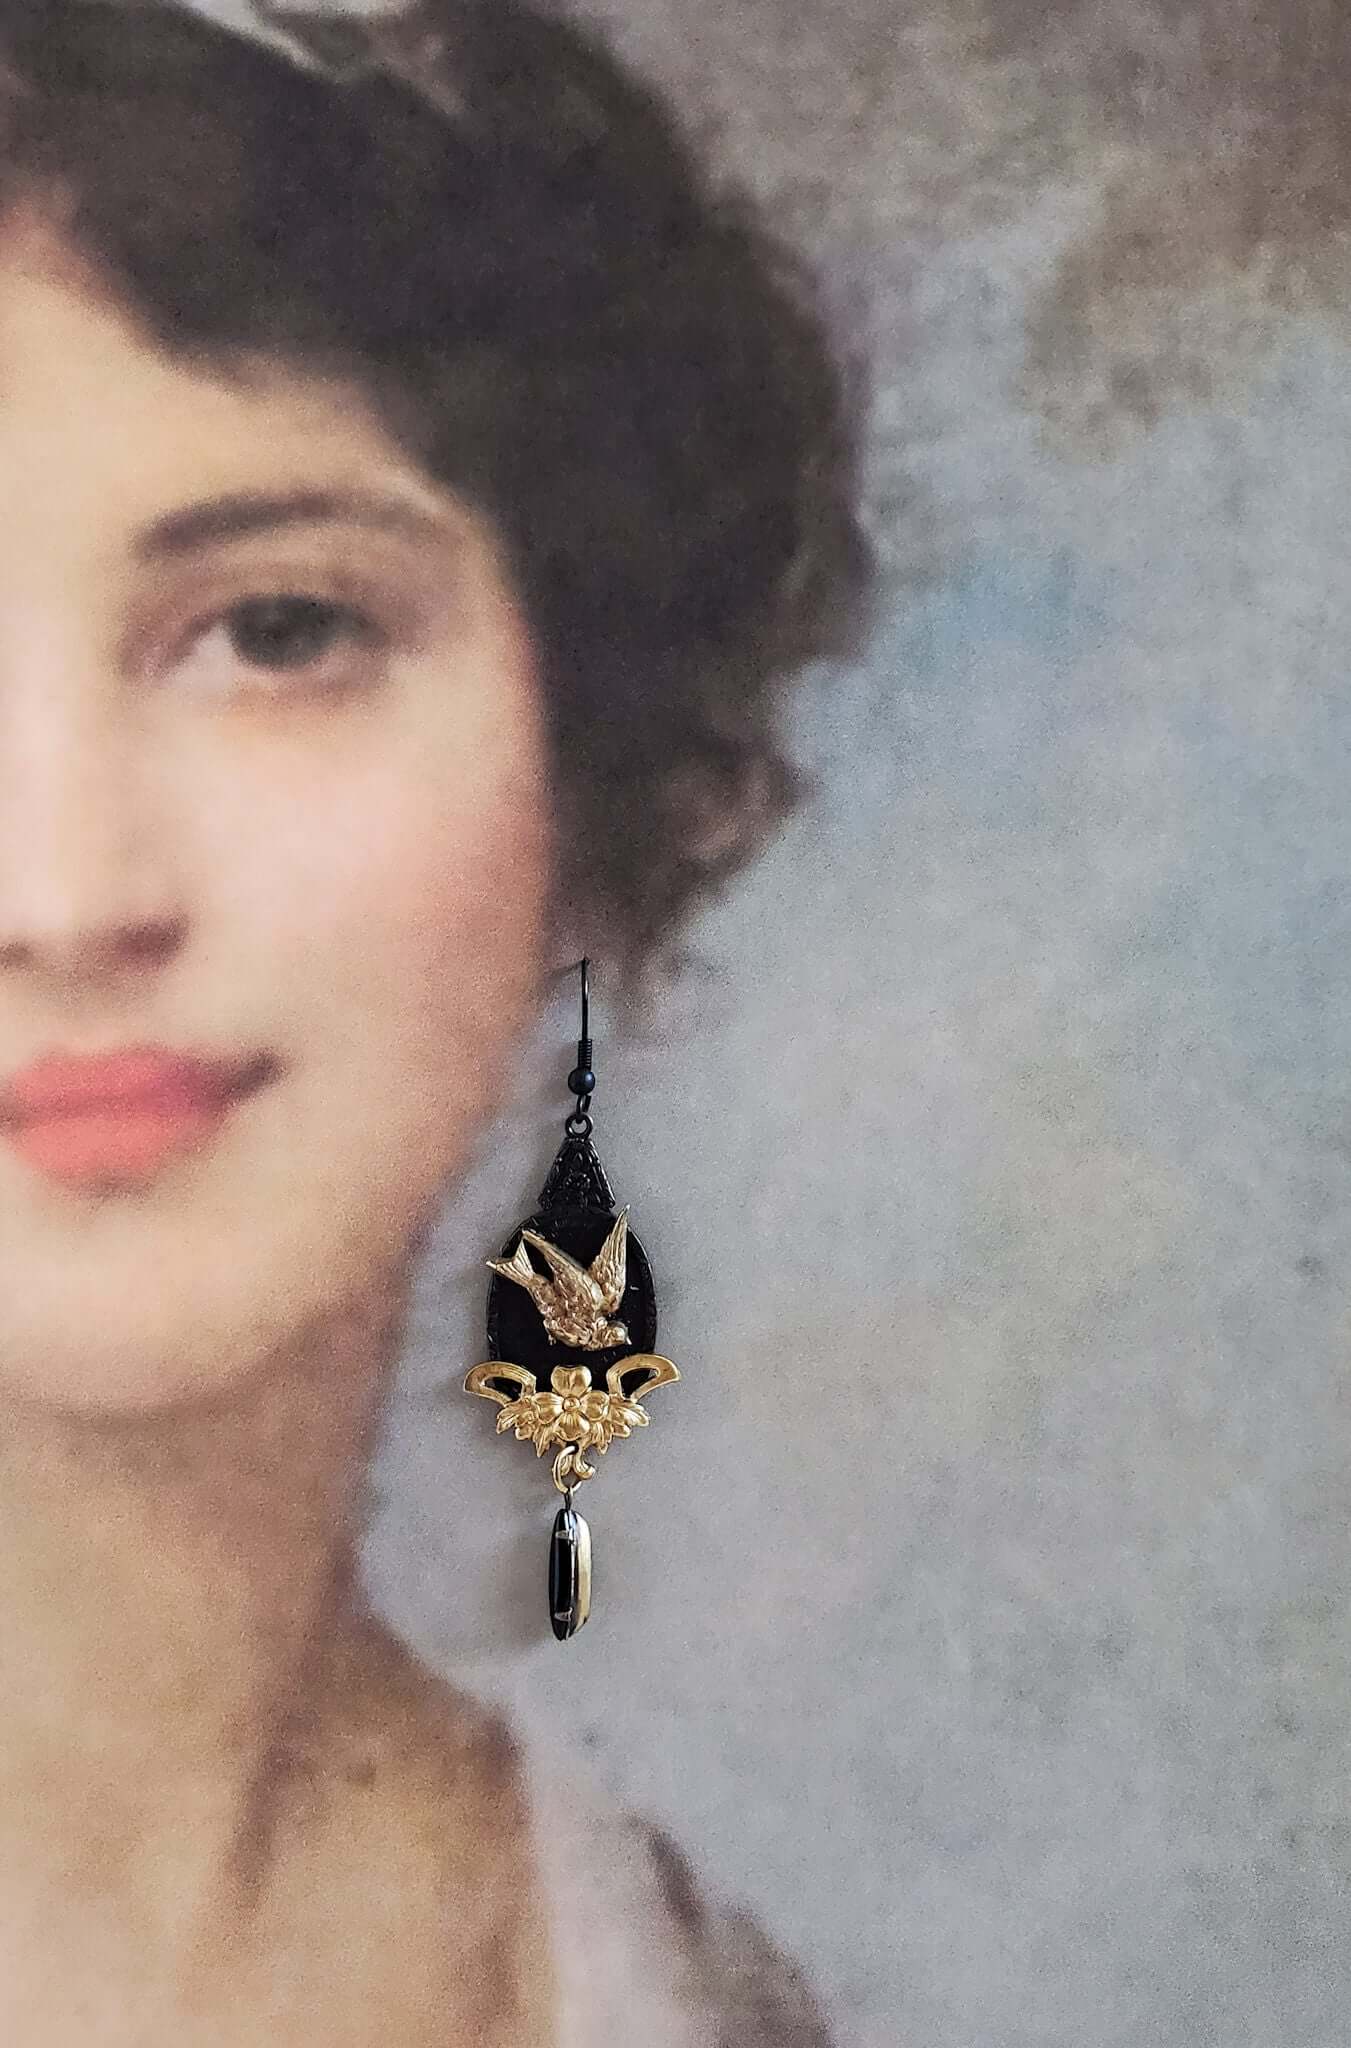 Dangle Earrings